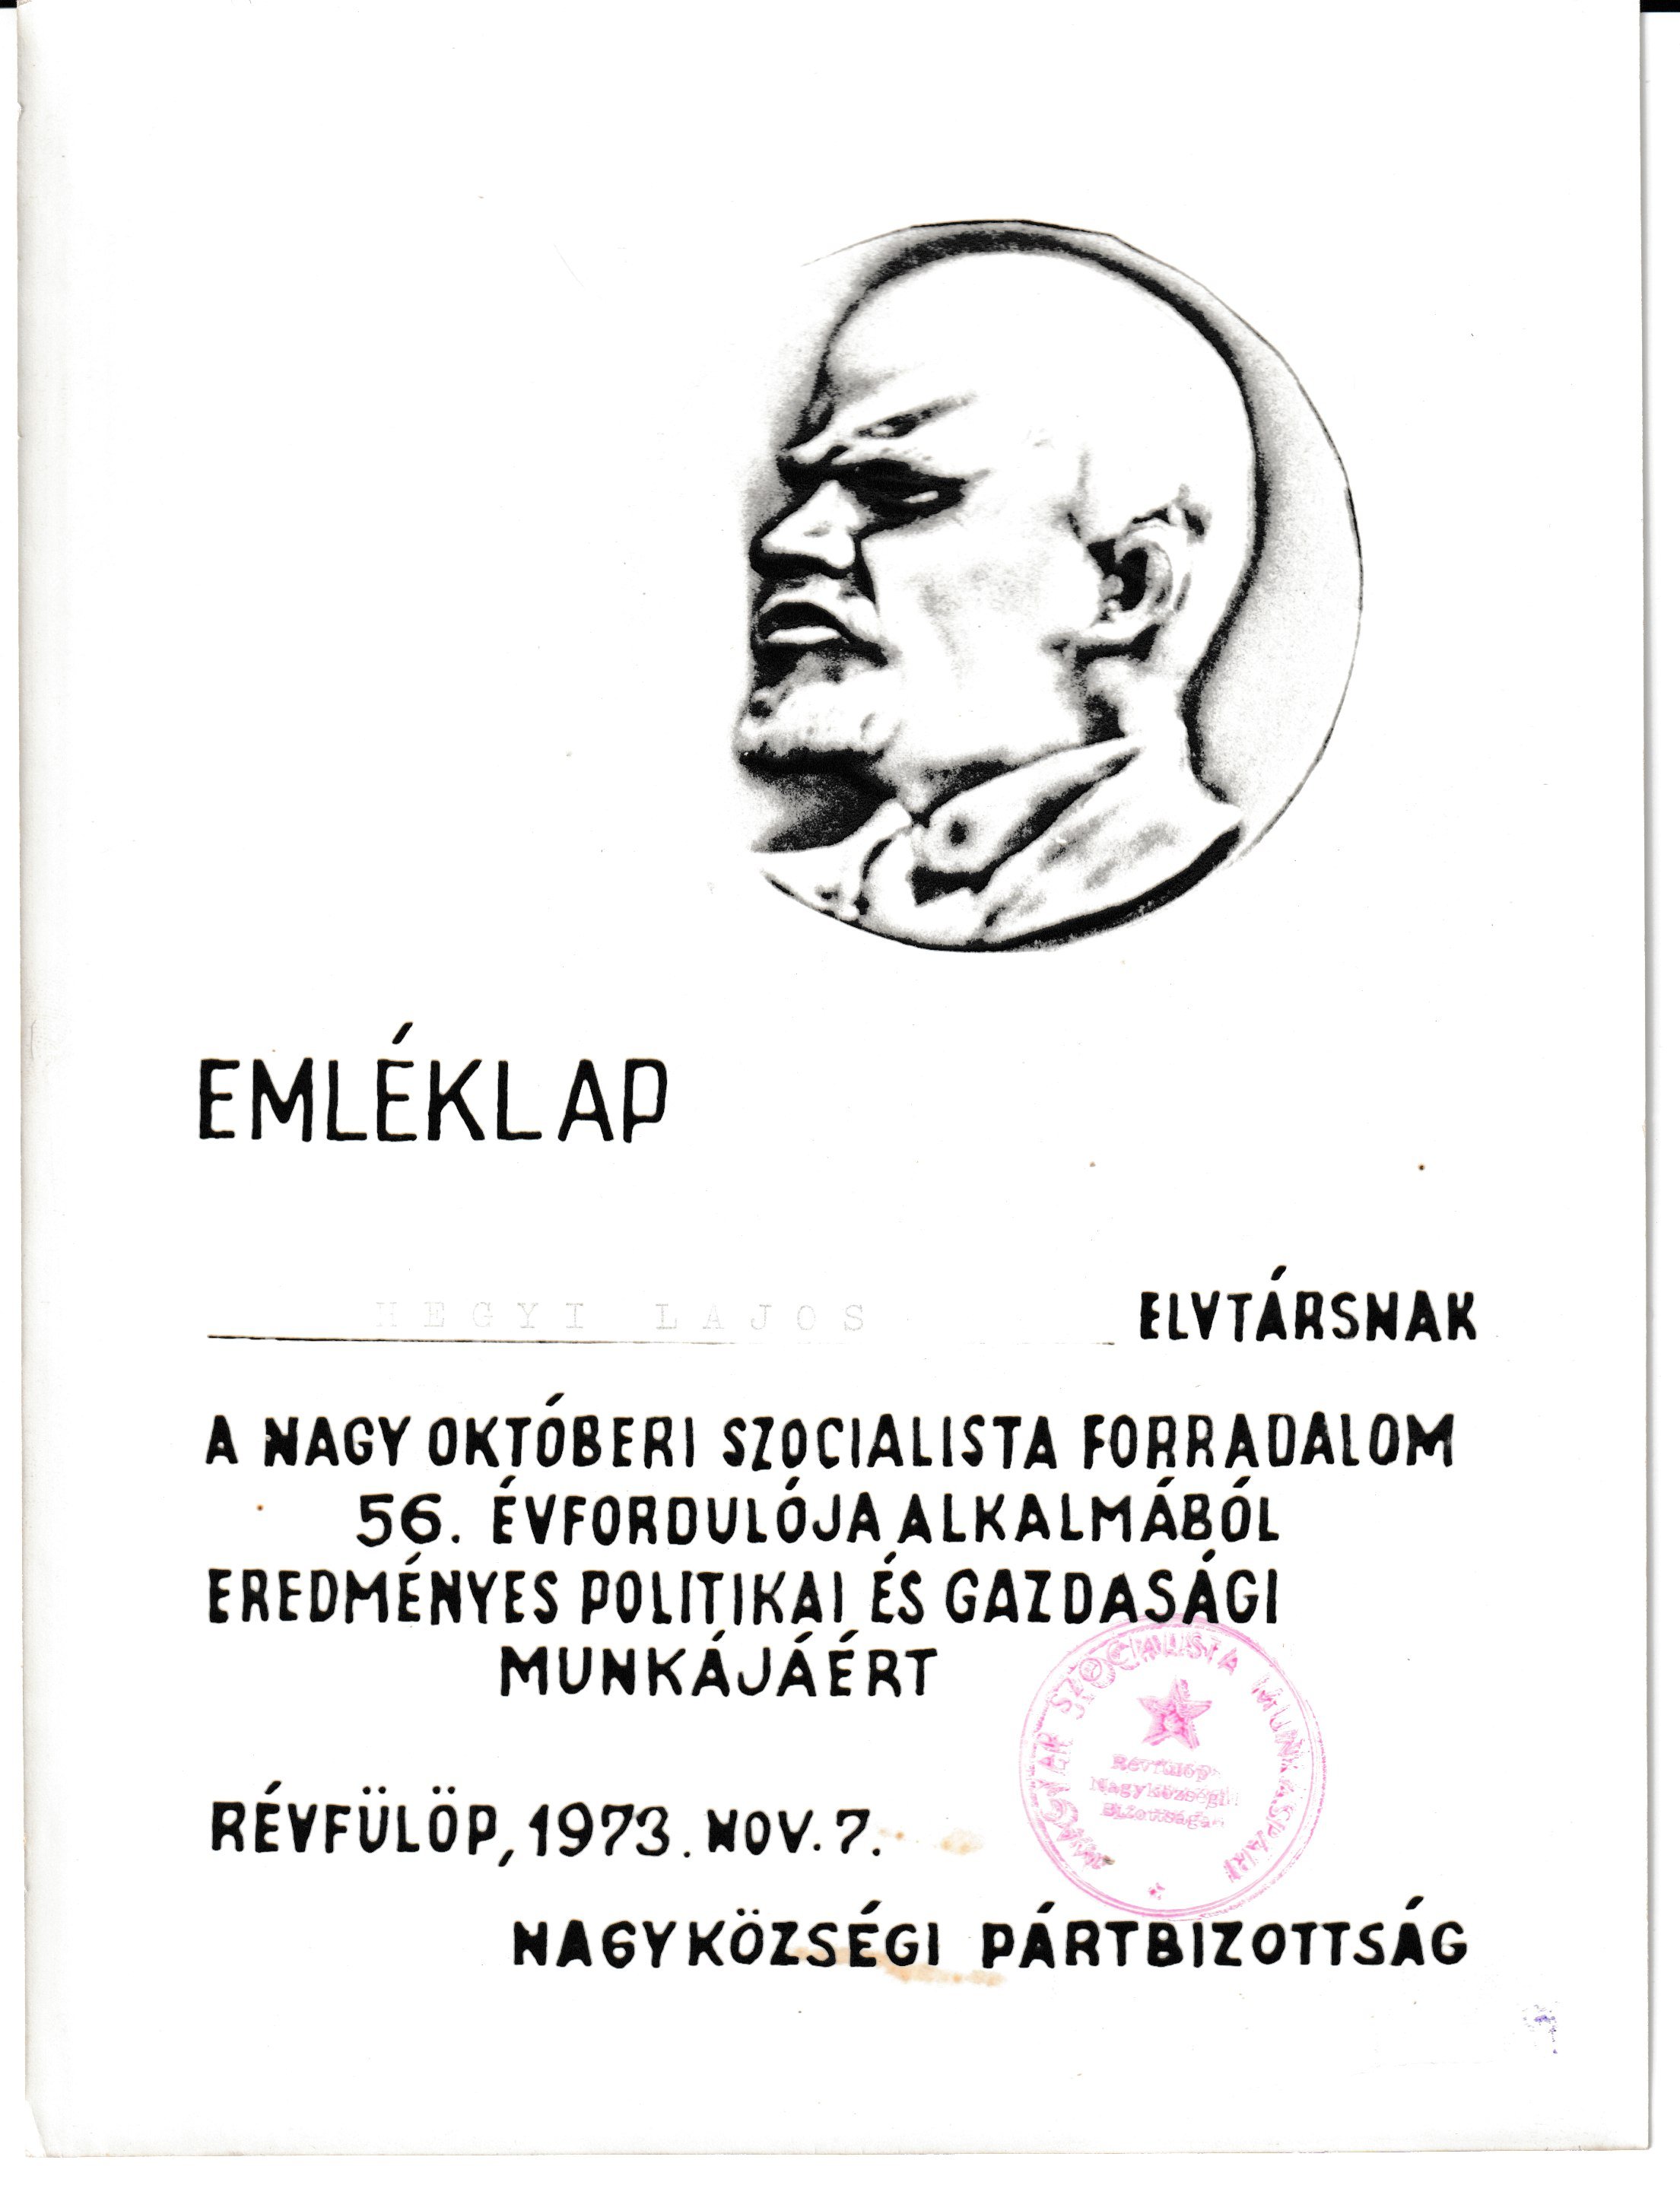 A Nagy Októberi Szocialista Forradalom 56. évfordulójára kiadott emléklap (Tapolcai Városi Múzeum CC BY-NC-SA)